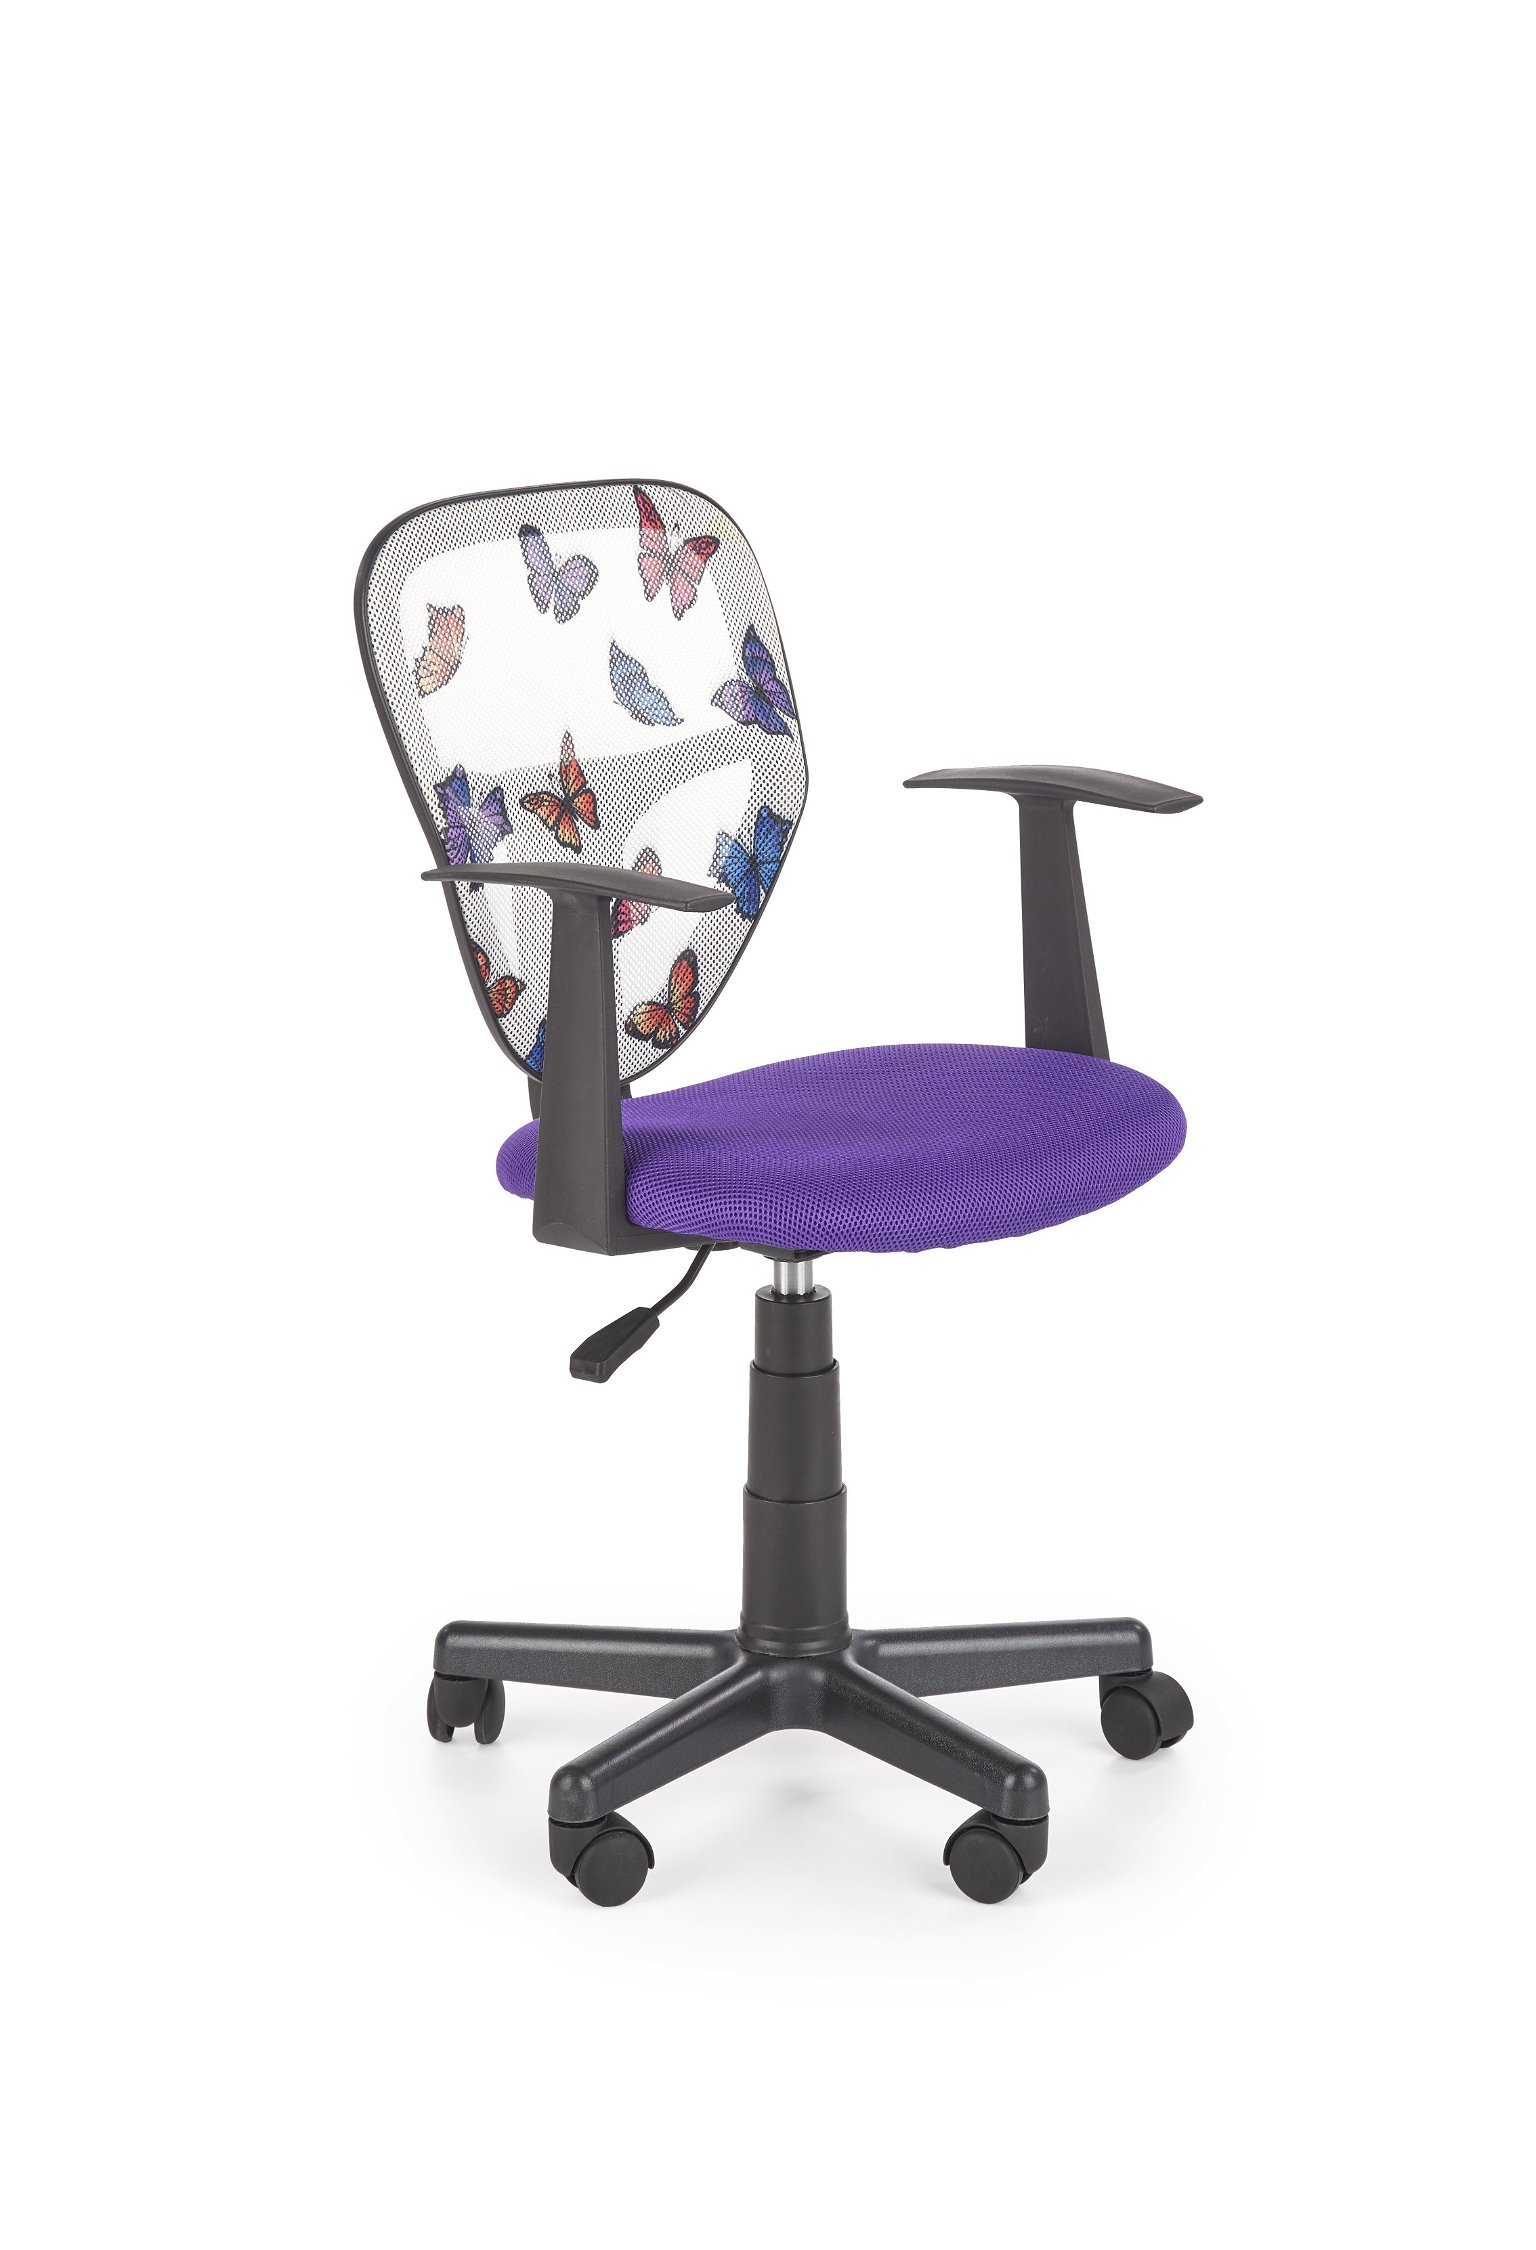 Vaikiška kėdė SPIKER, violetinė - 1